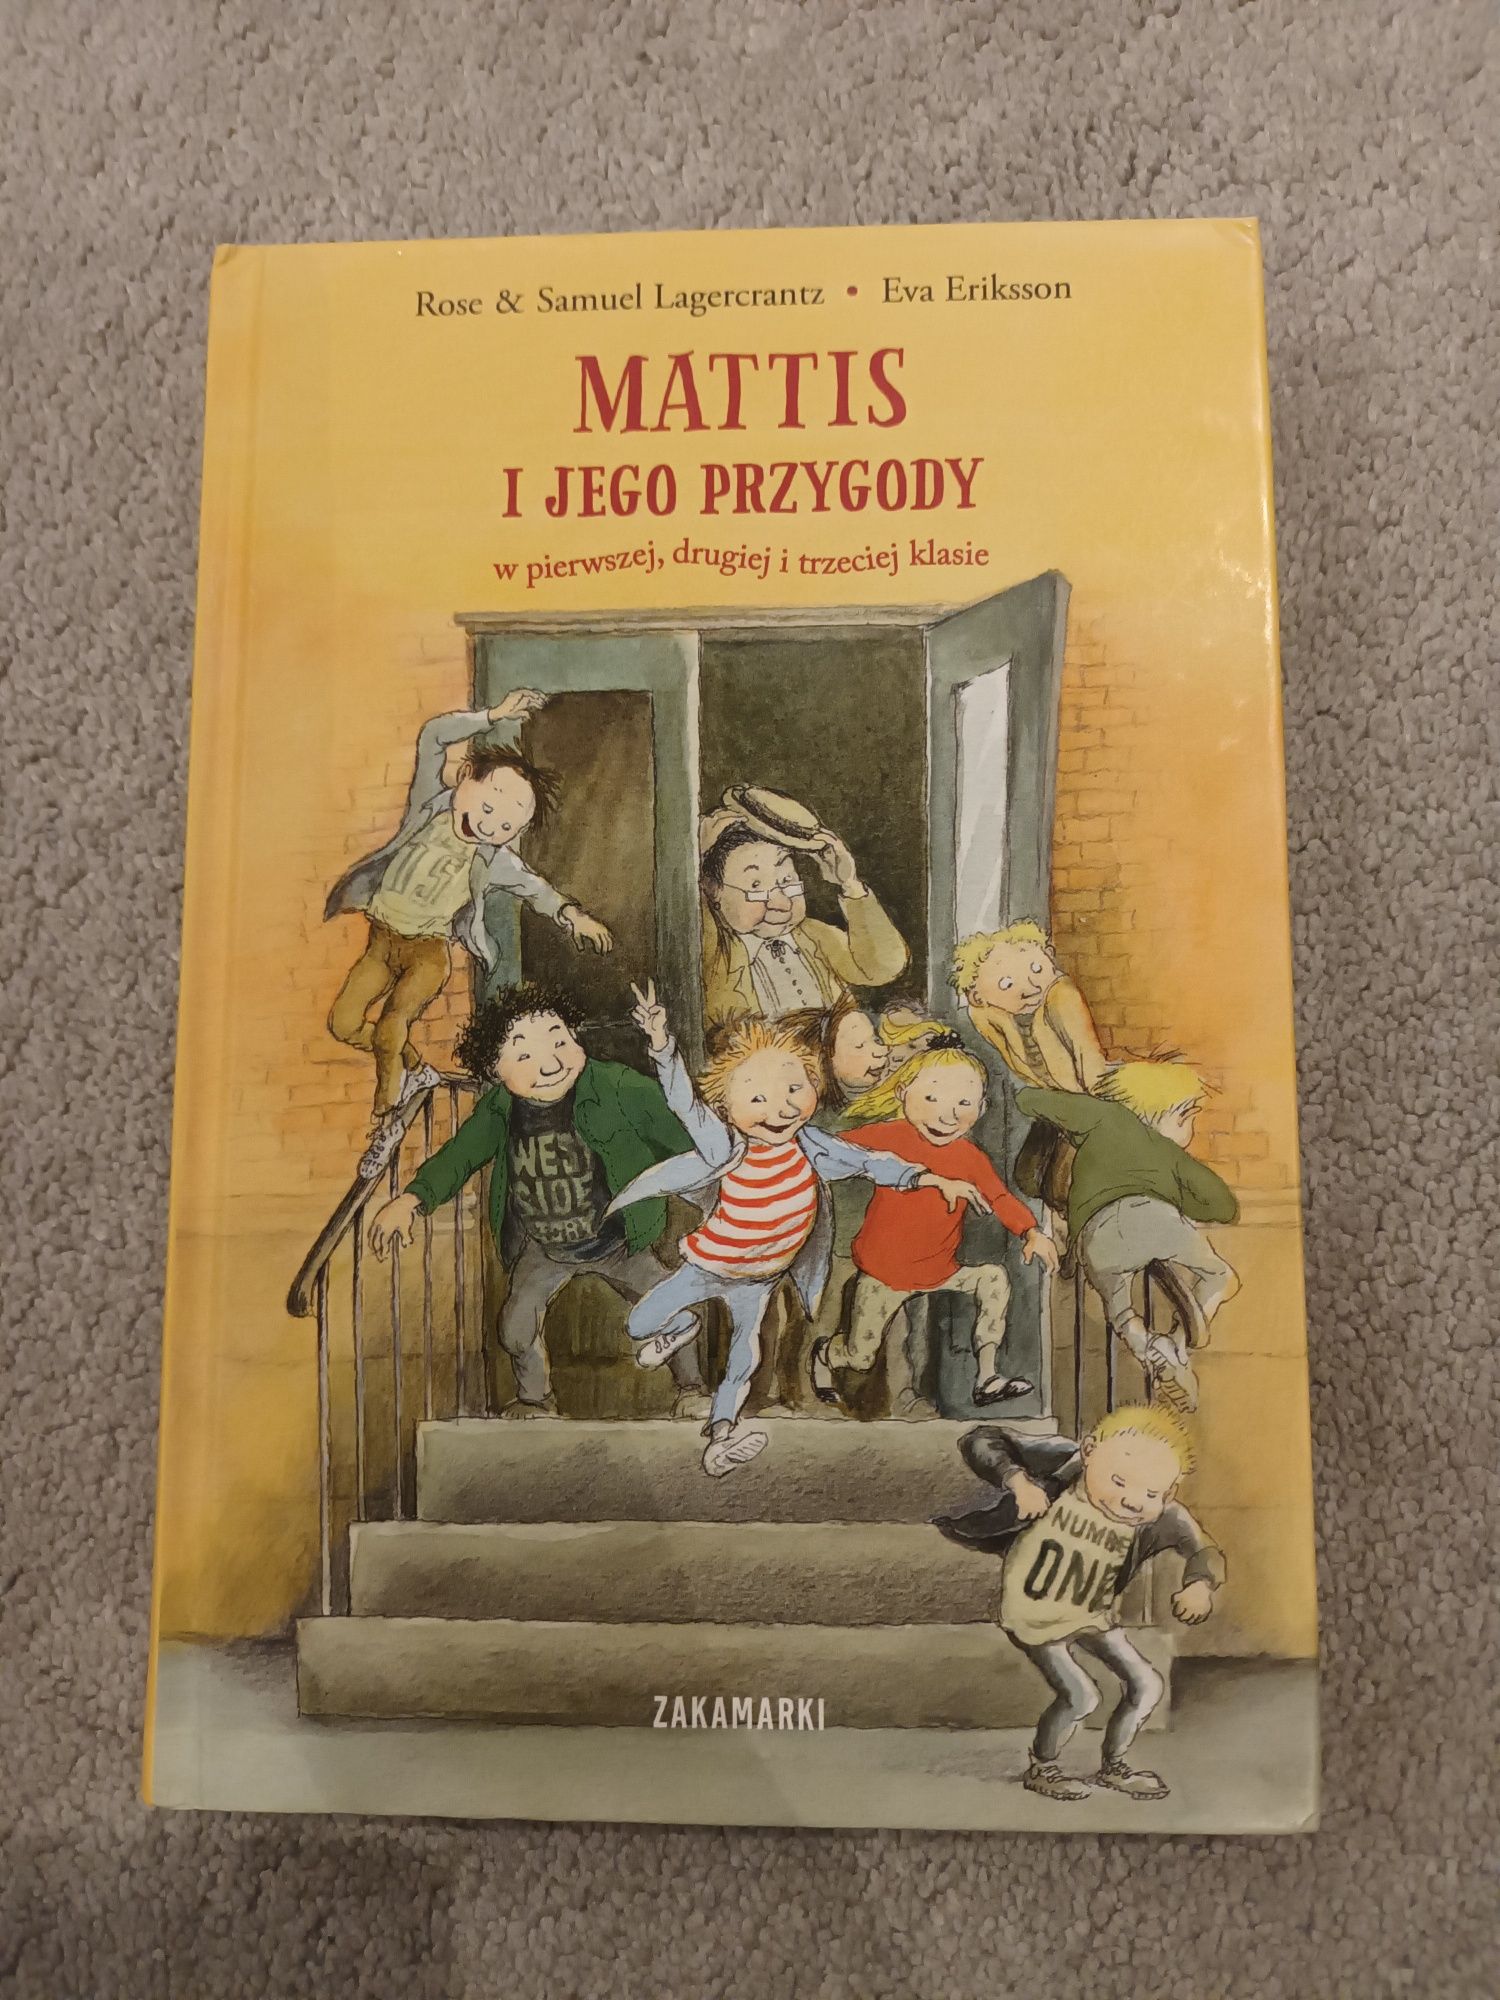 Książka dla dzieci "Mattis i jego przygody"